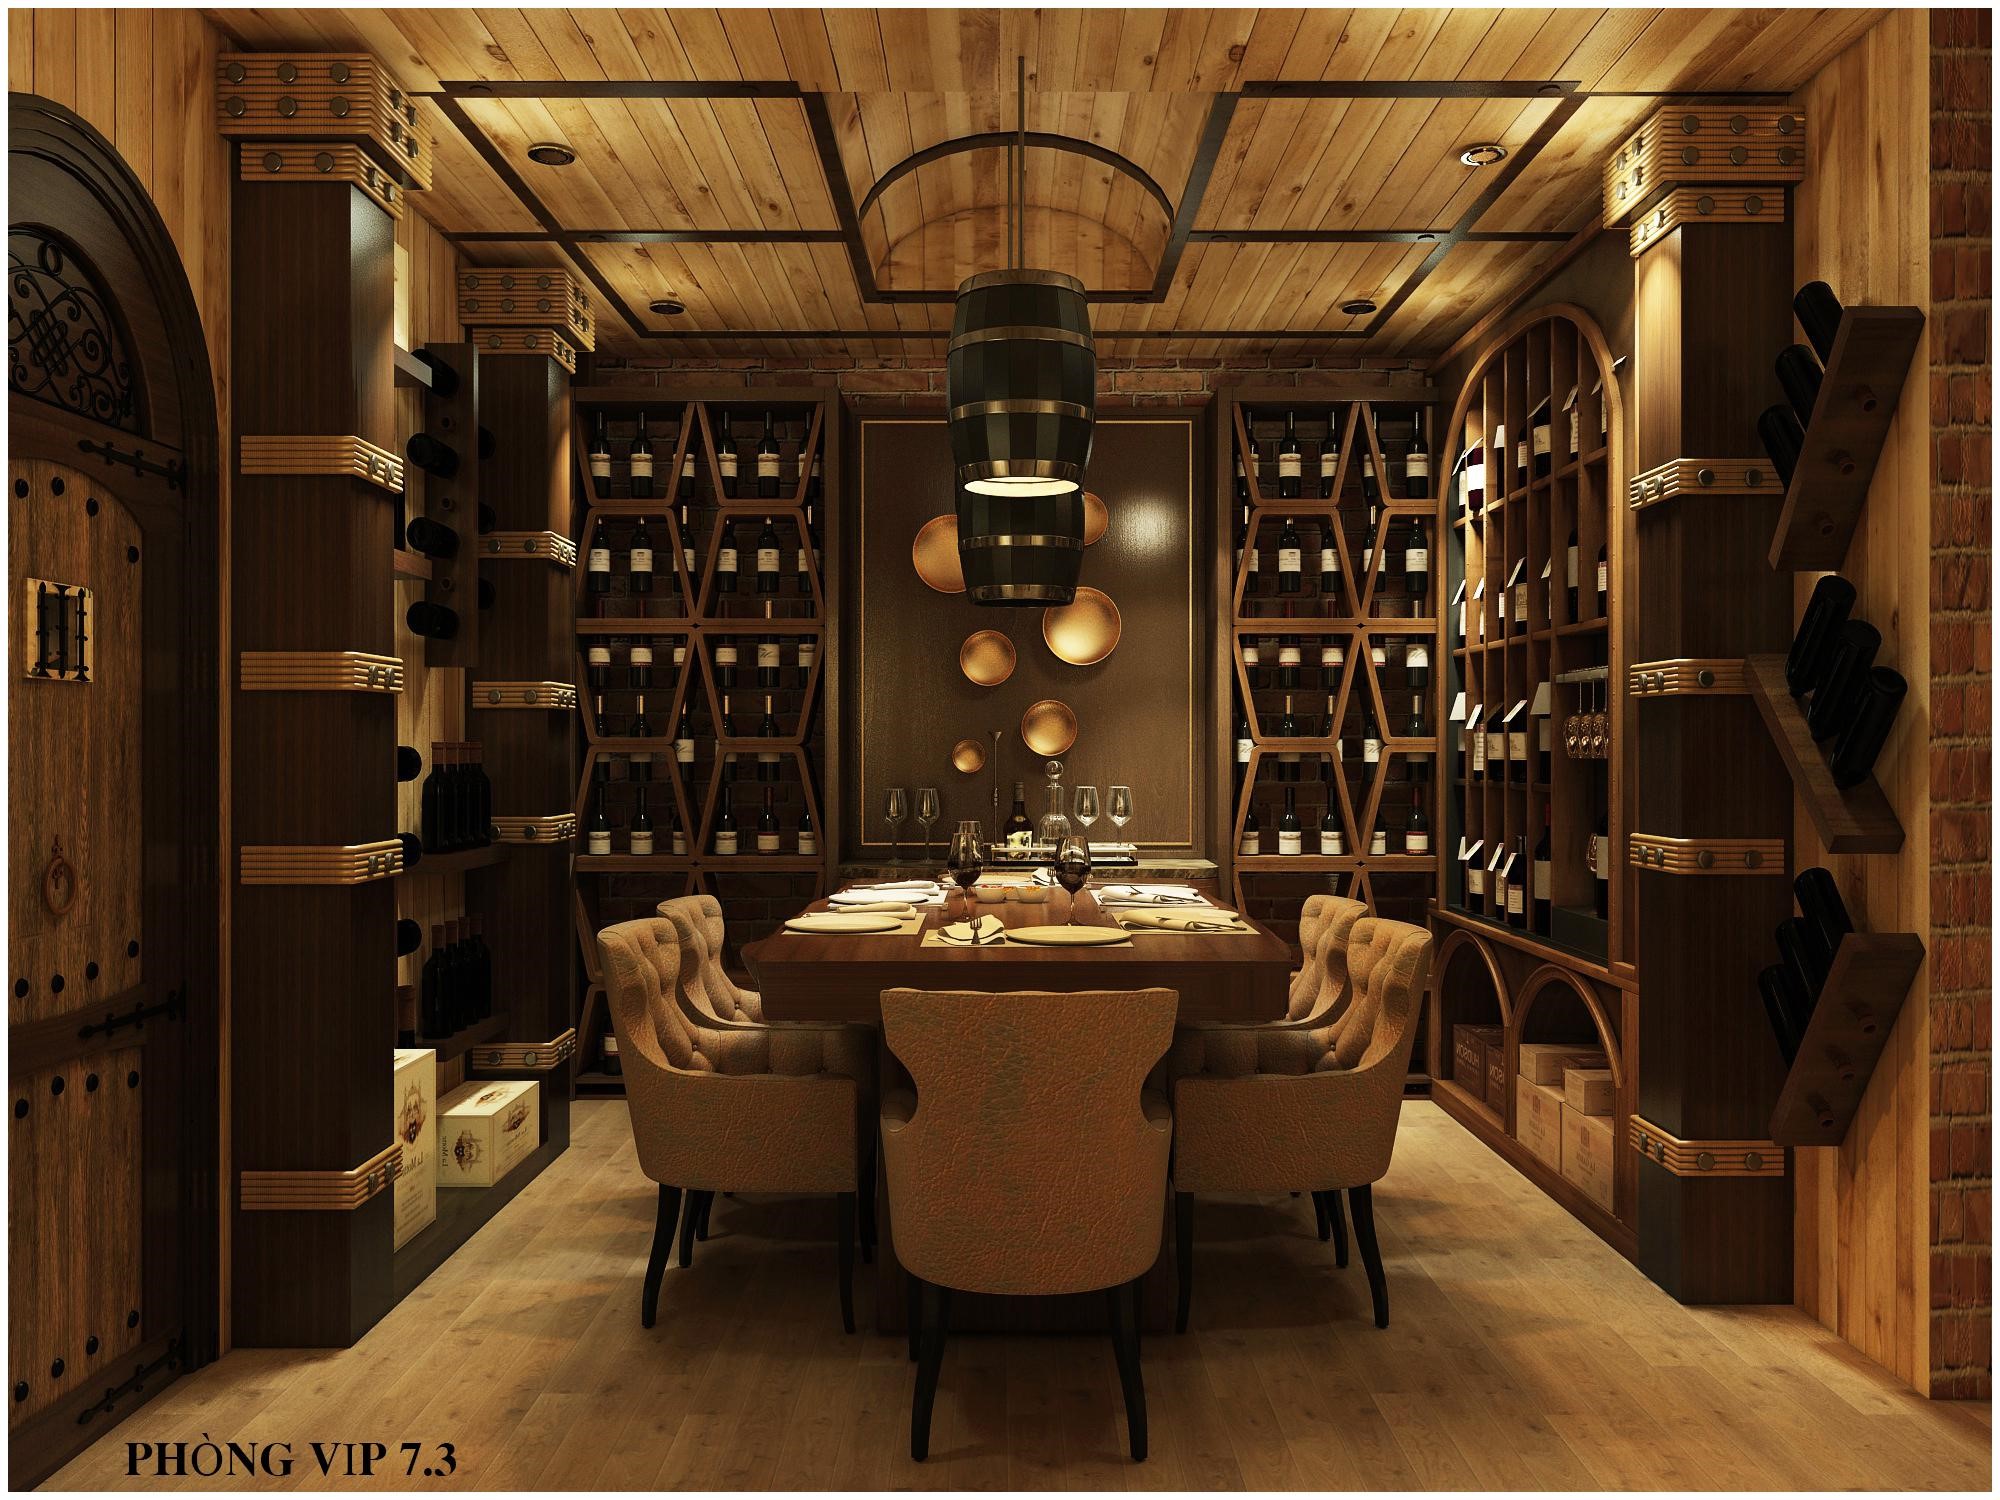 Hầm rượu GIA được thiết kế theo phong cách châu Âu đầy ấn tượng.